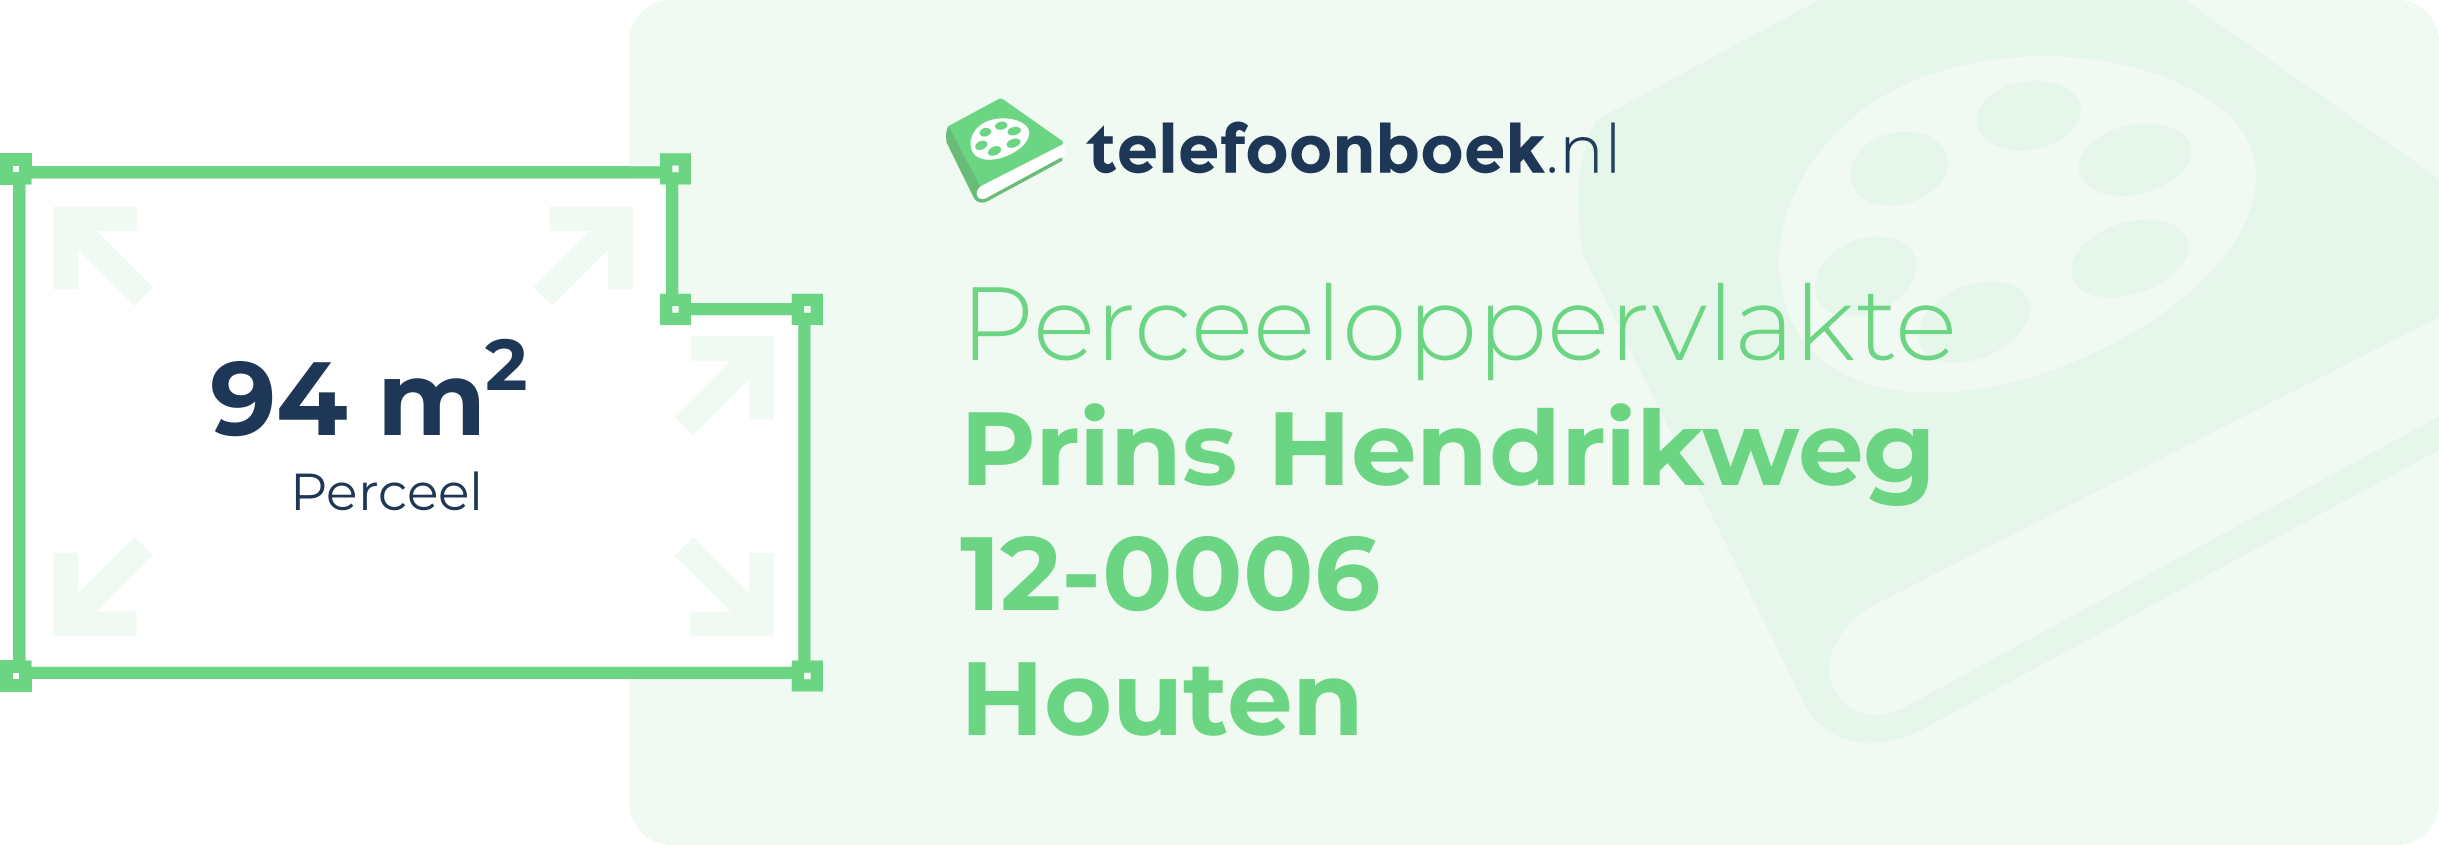 Perceeloppervlakte Prins Hendrikweg 12-0006 Houten